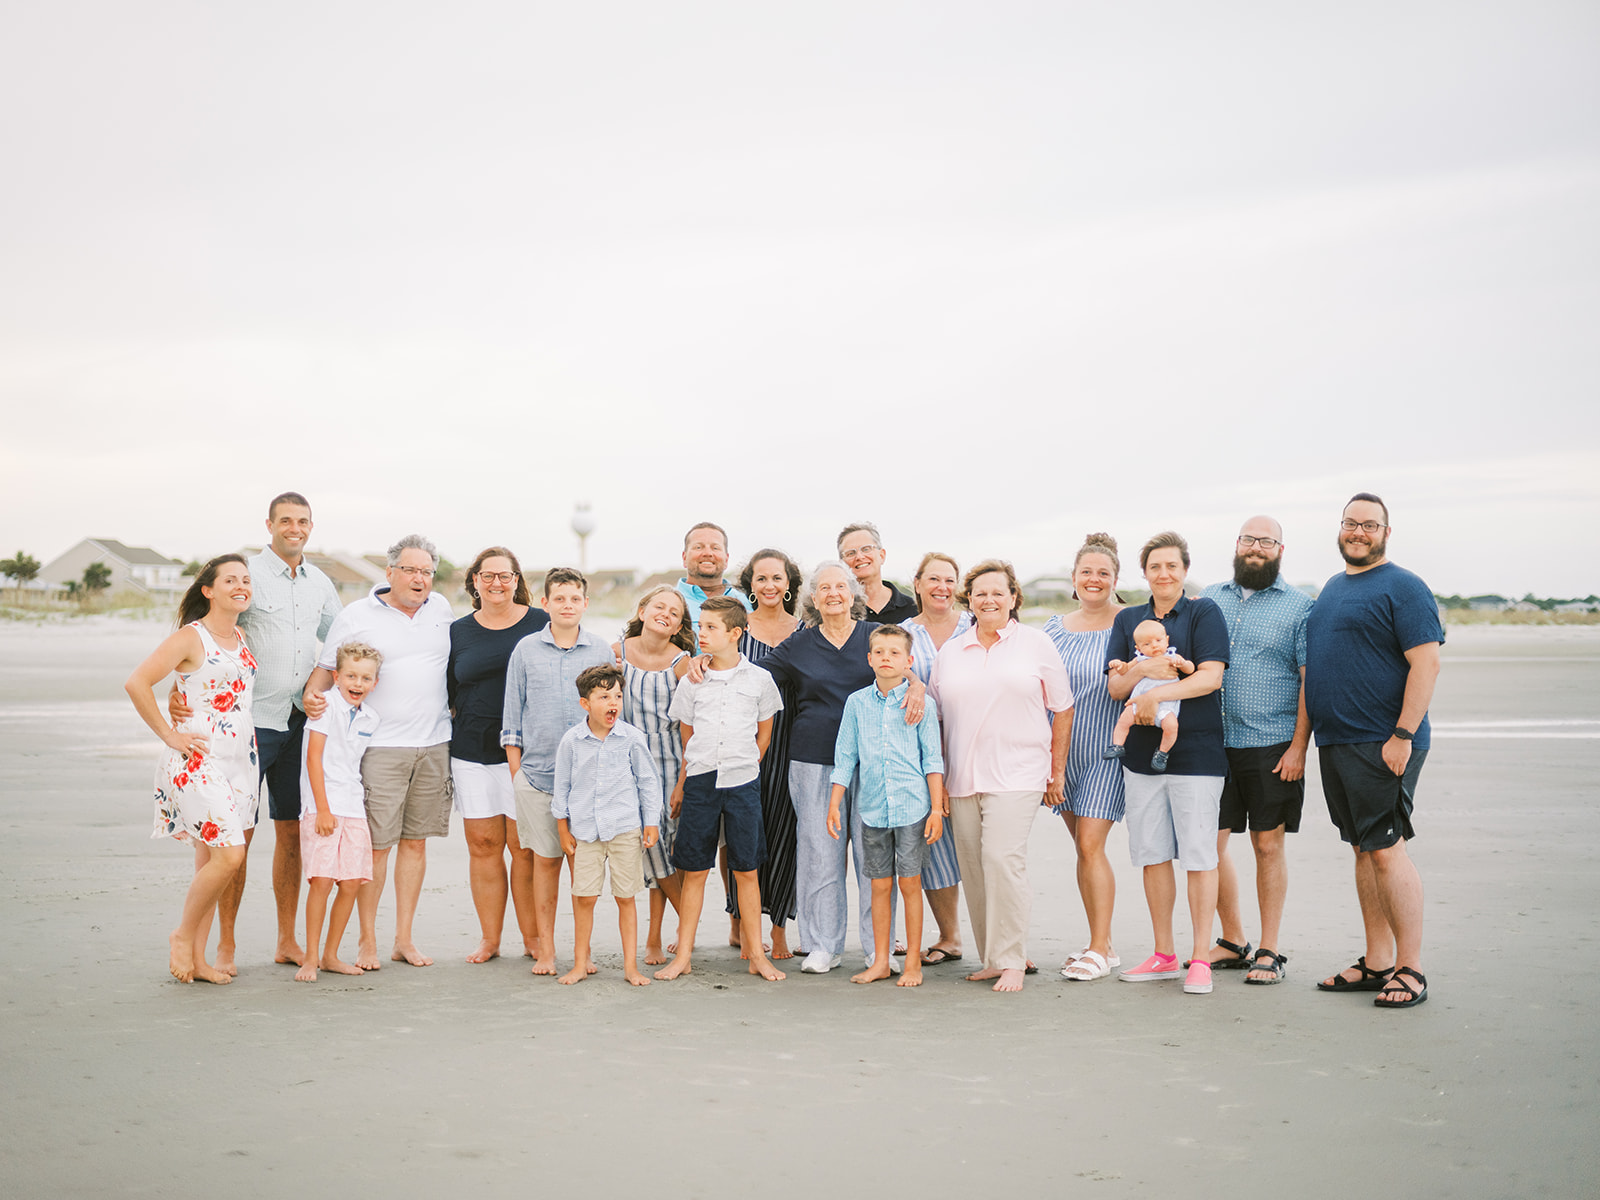 Extended family Phographer on the beach, virginia beach vacation family photos, large group photographer virginia